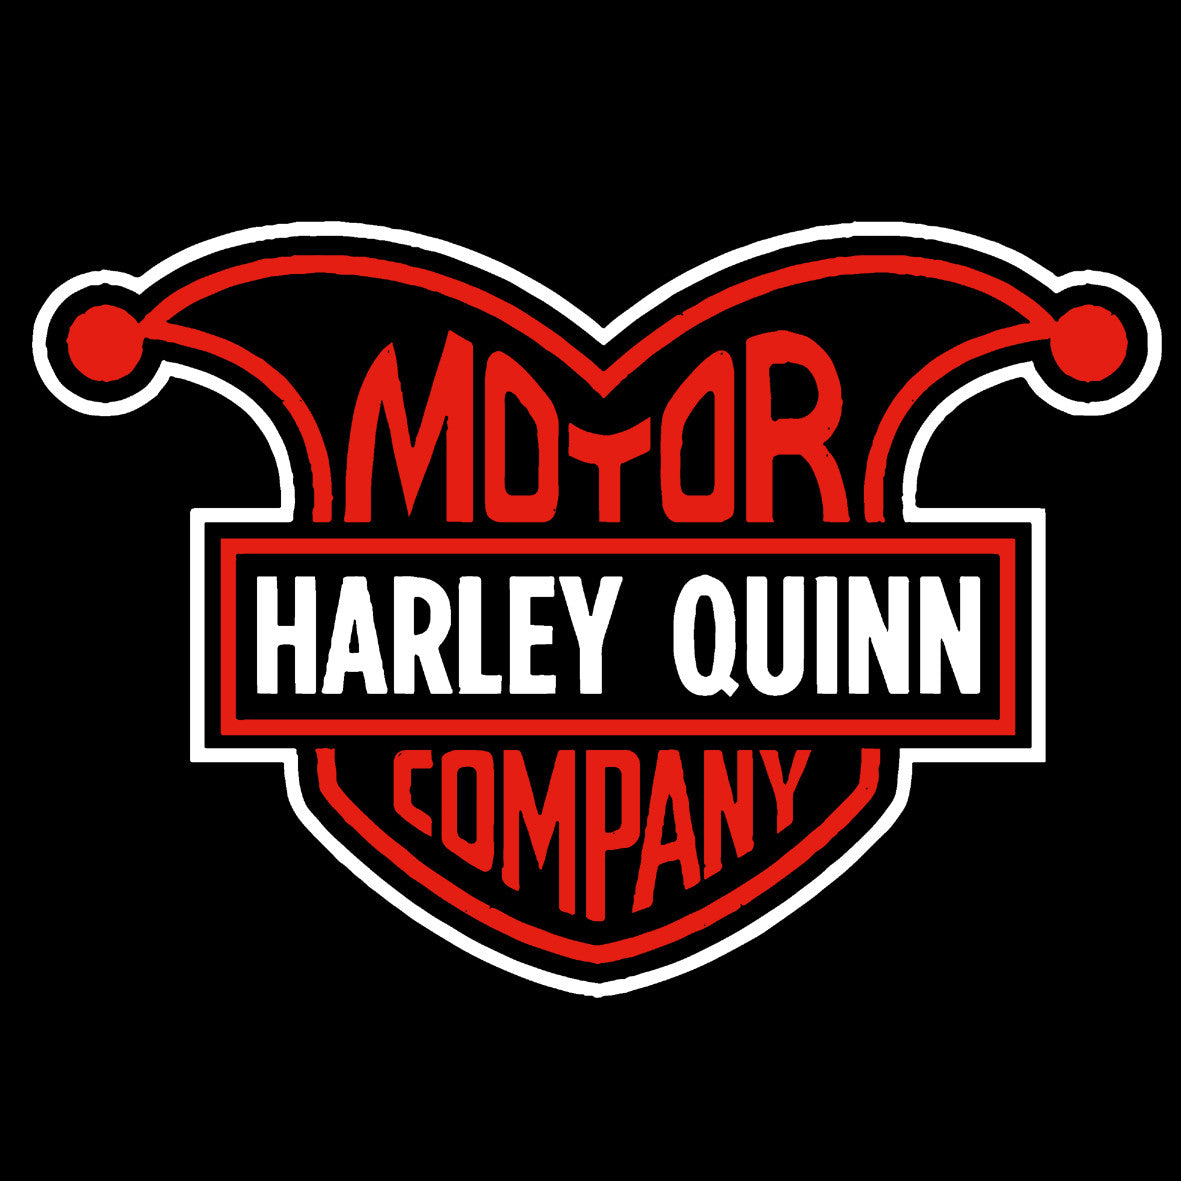 Motor Harley Quinn